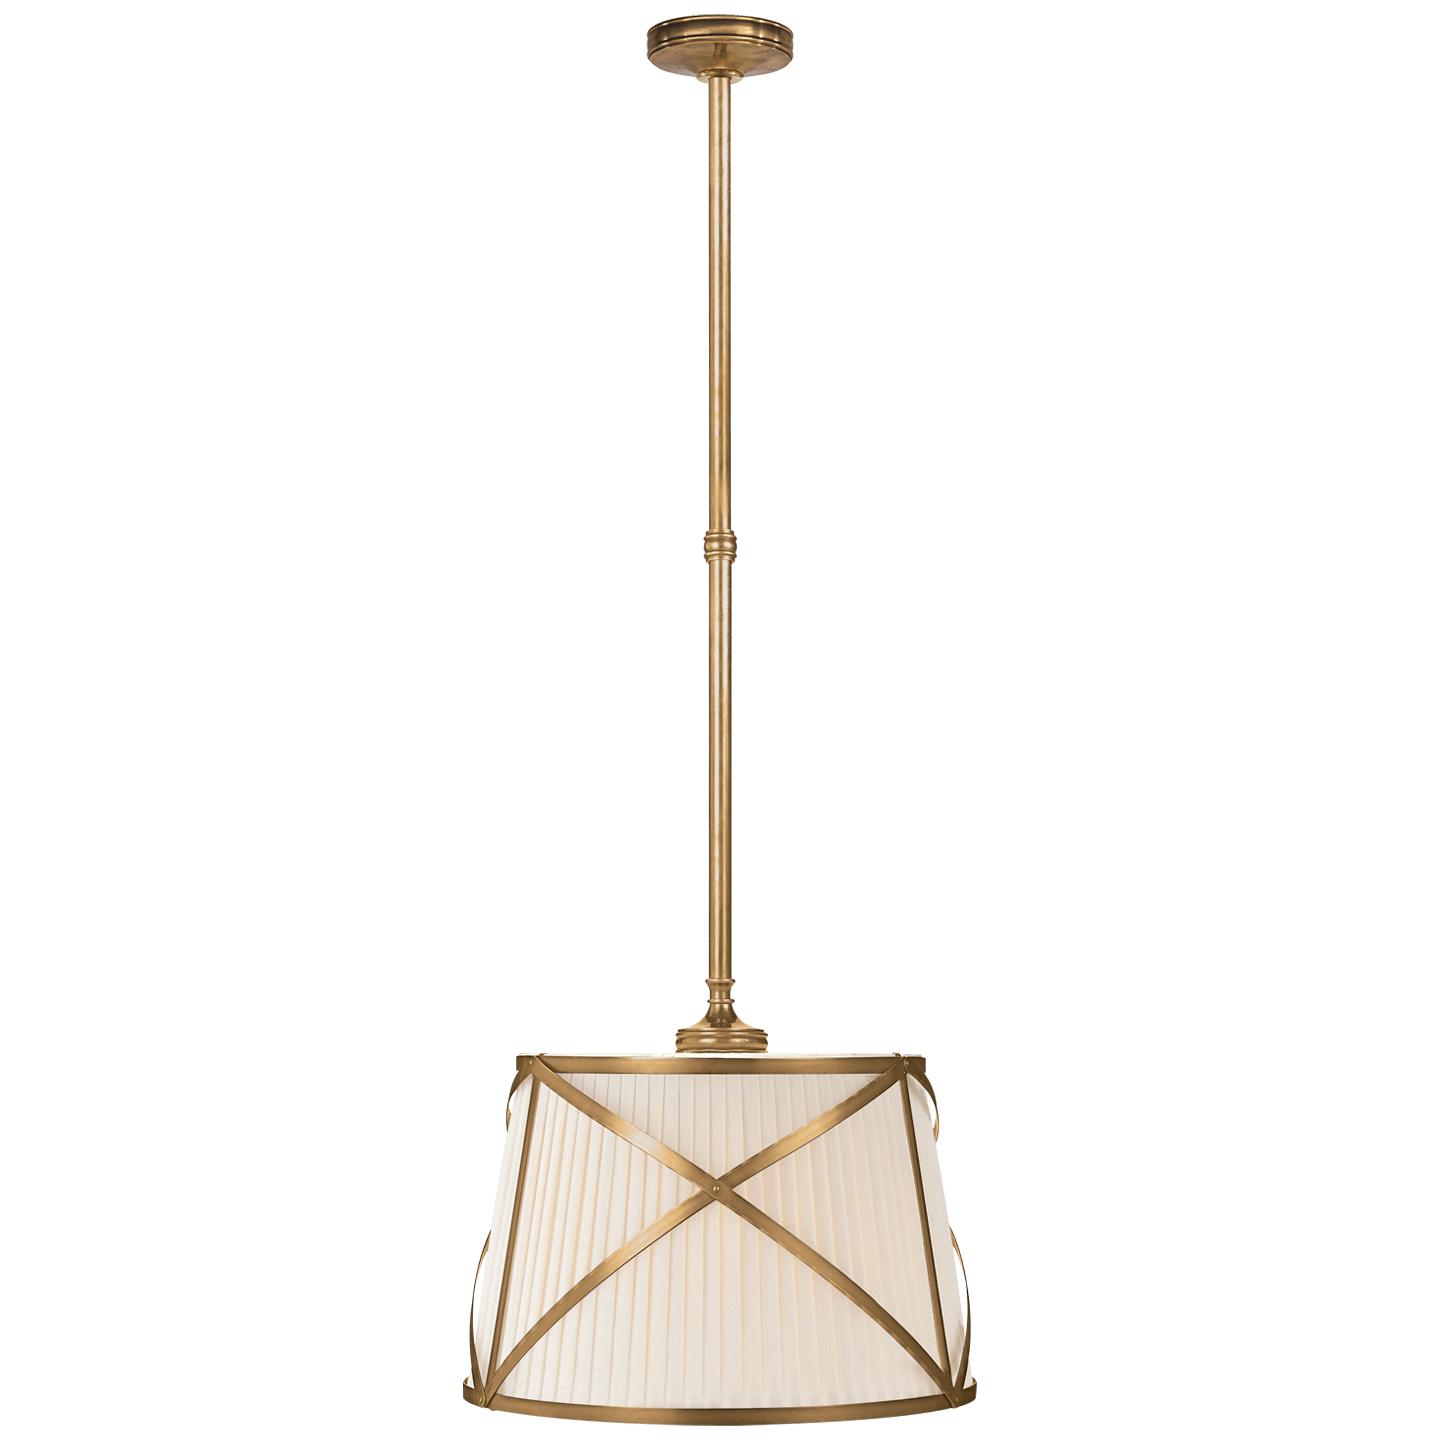 Купить Подвесной светильник Grosvenor Single Hanging Shade в интернет-магазине roooms.ru